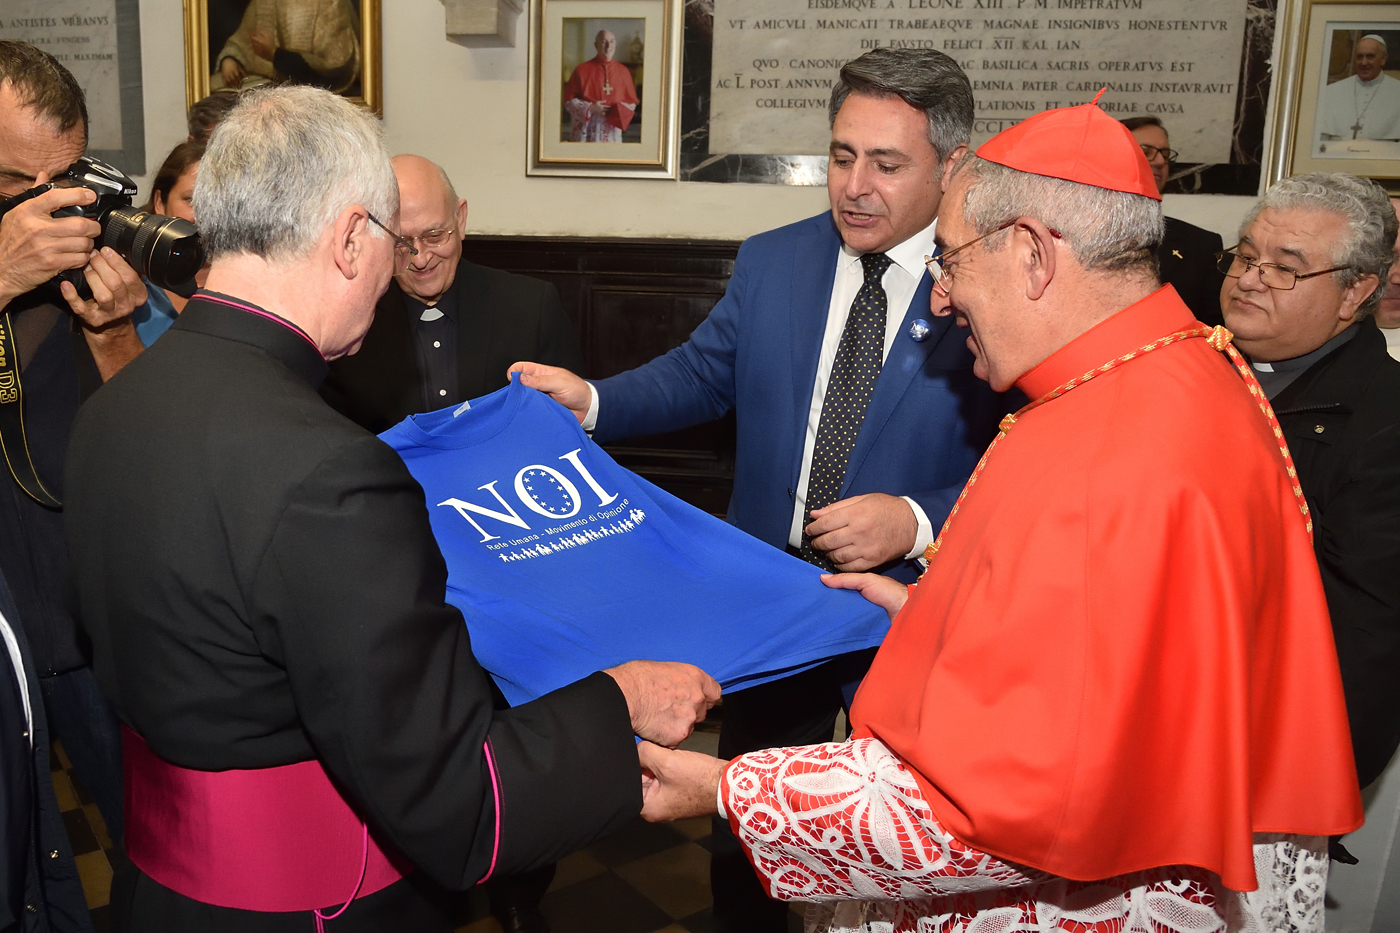 Fabio Gallo consegna al Cardinale Angelo de Donatis la maglia simbolo delle battaglie civiche del Movimento NOI